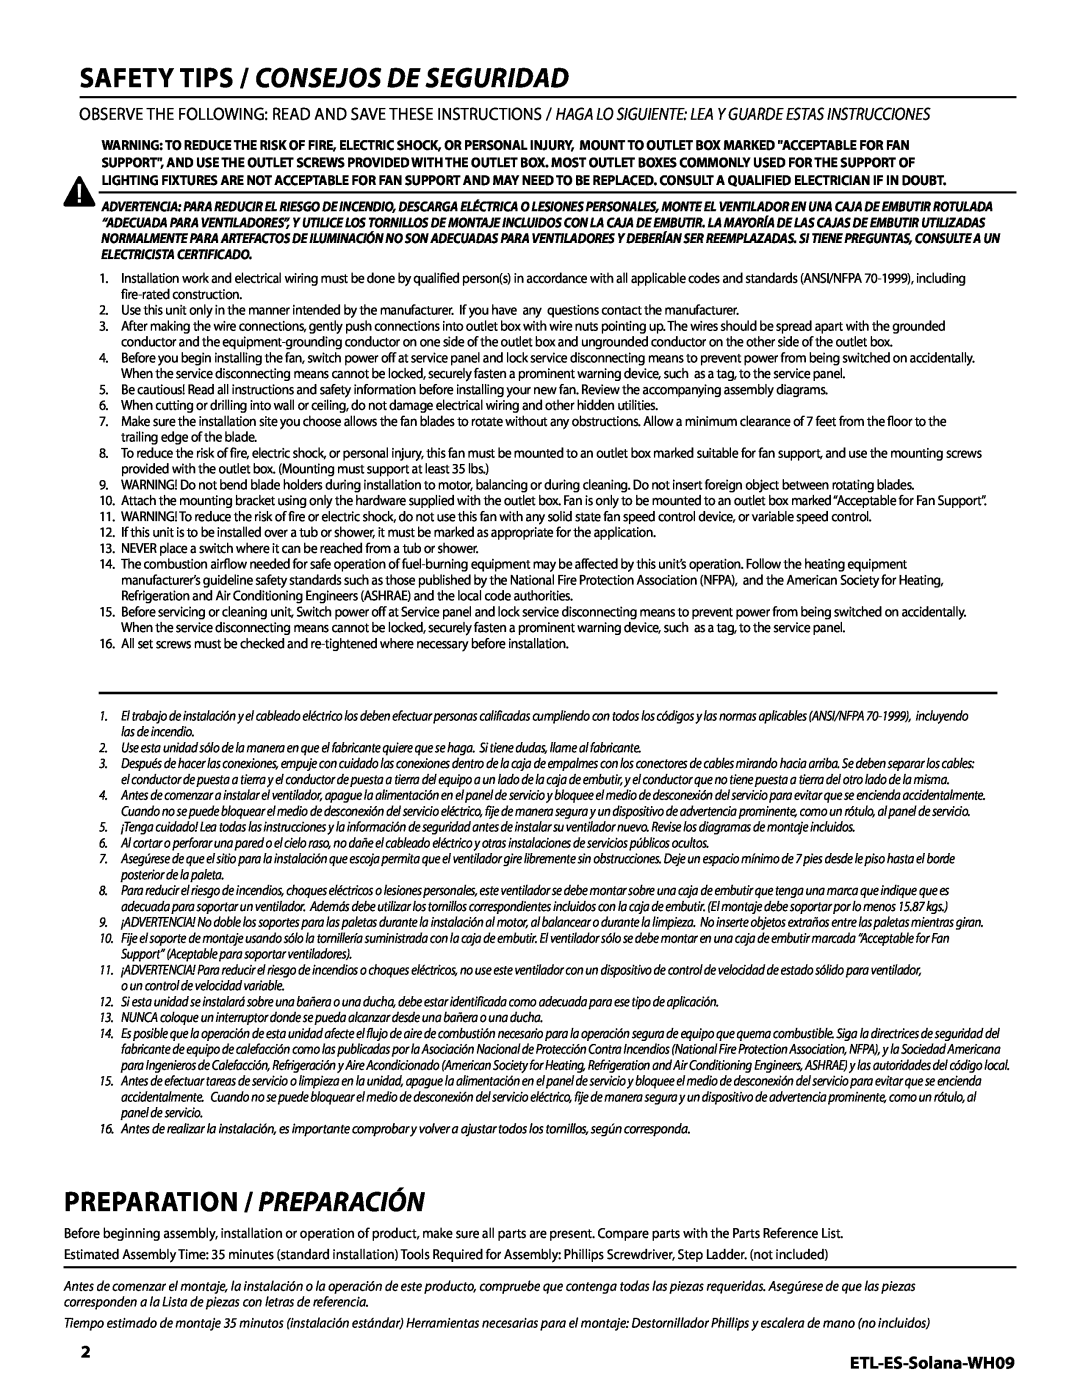 Westinghouse MR 72161 Safety tips / Consejos de seguridad, ETL-ES-Solana-WH09, Preparation / Preparación 